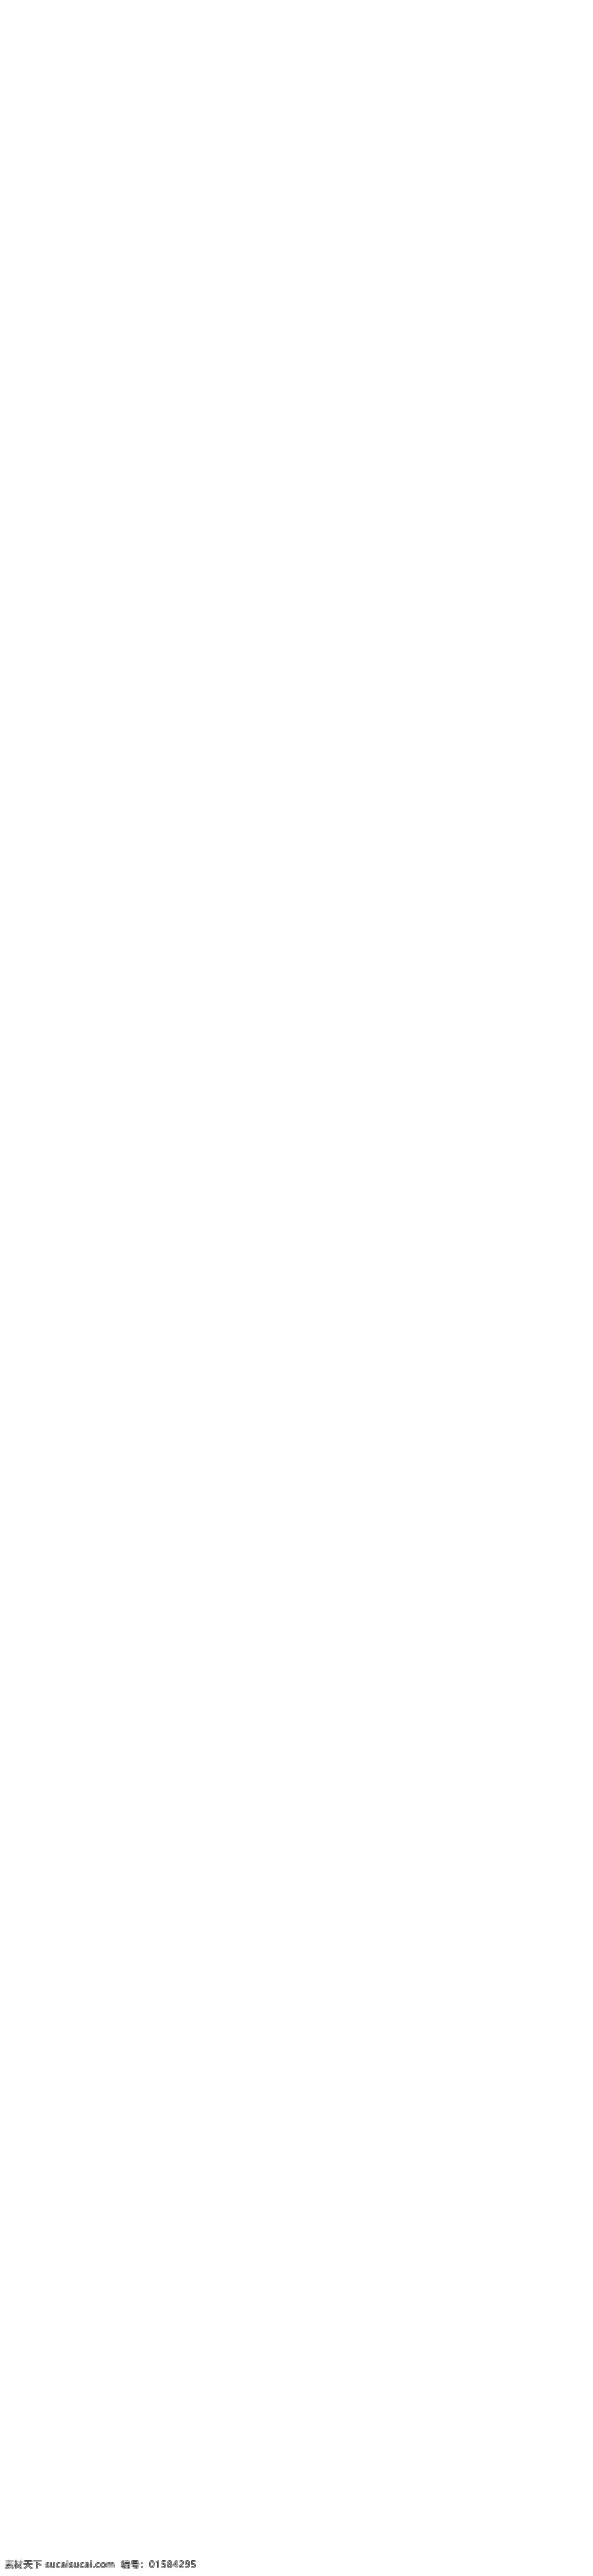 2016 天猫 双 全球 狂欢节 旗舰店 模板 淘宝 主 图 电器 模板下载 设计素材 天猫定制款 logo 领 券 直 降 元 双11